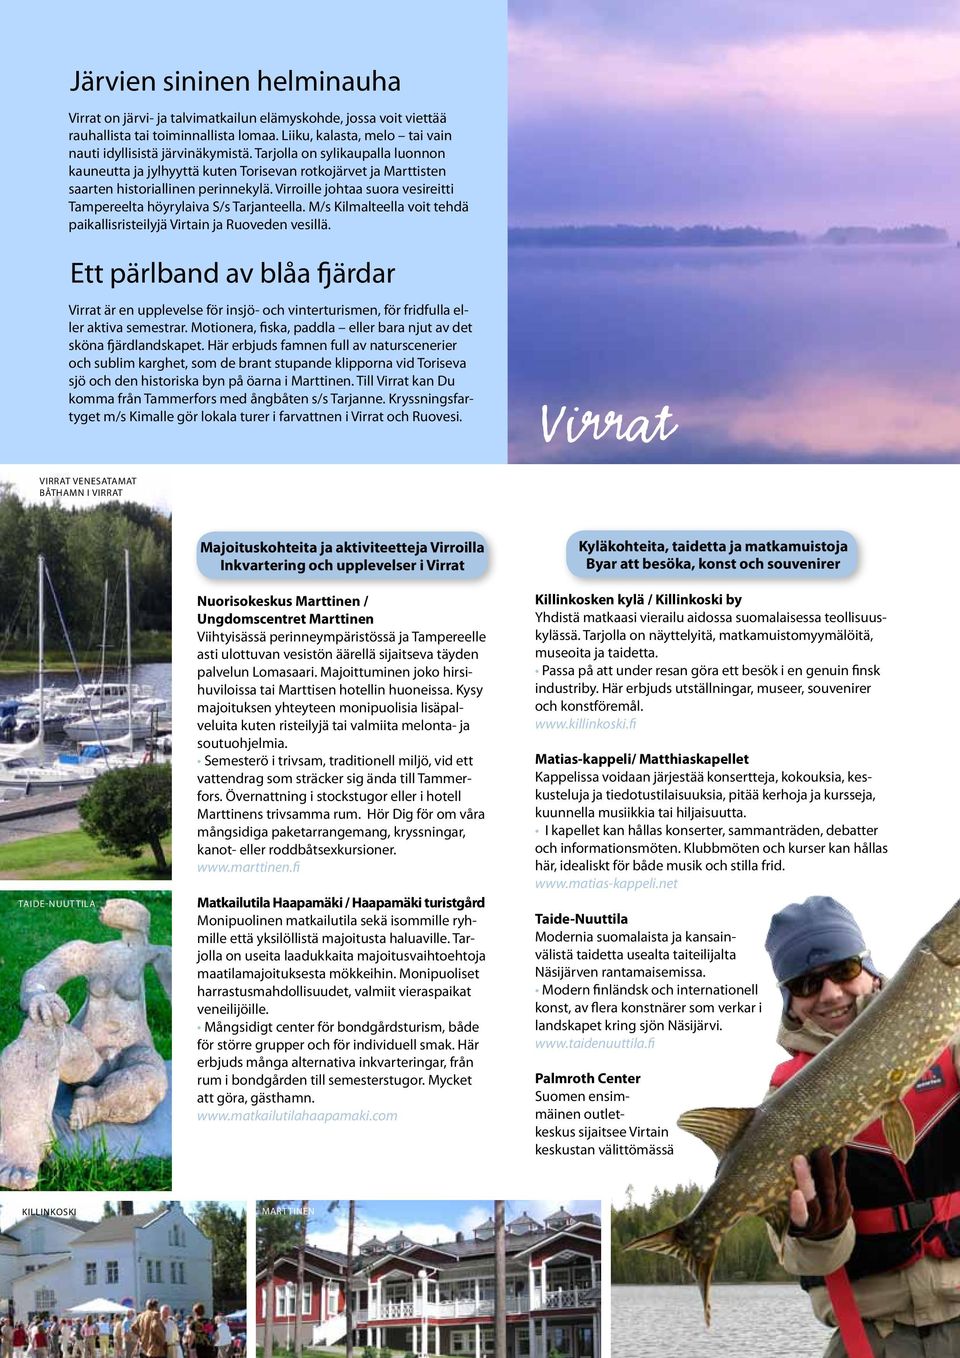 Virroille johtaa suora vesireitti Tampereelta höyrylaiva S/s Tarjanteella. M/s Kilmalteella voit tehdä paikallisristeilyjä Virtain ja Ruoveden vesillä.